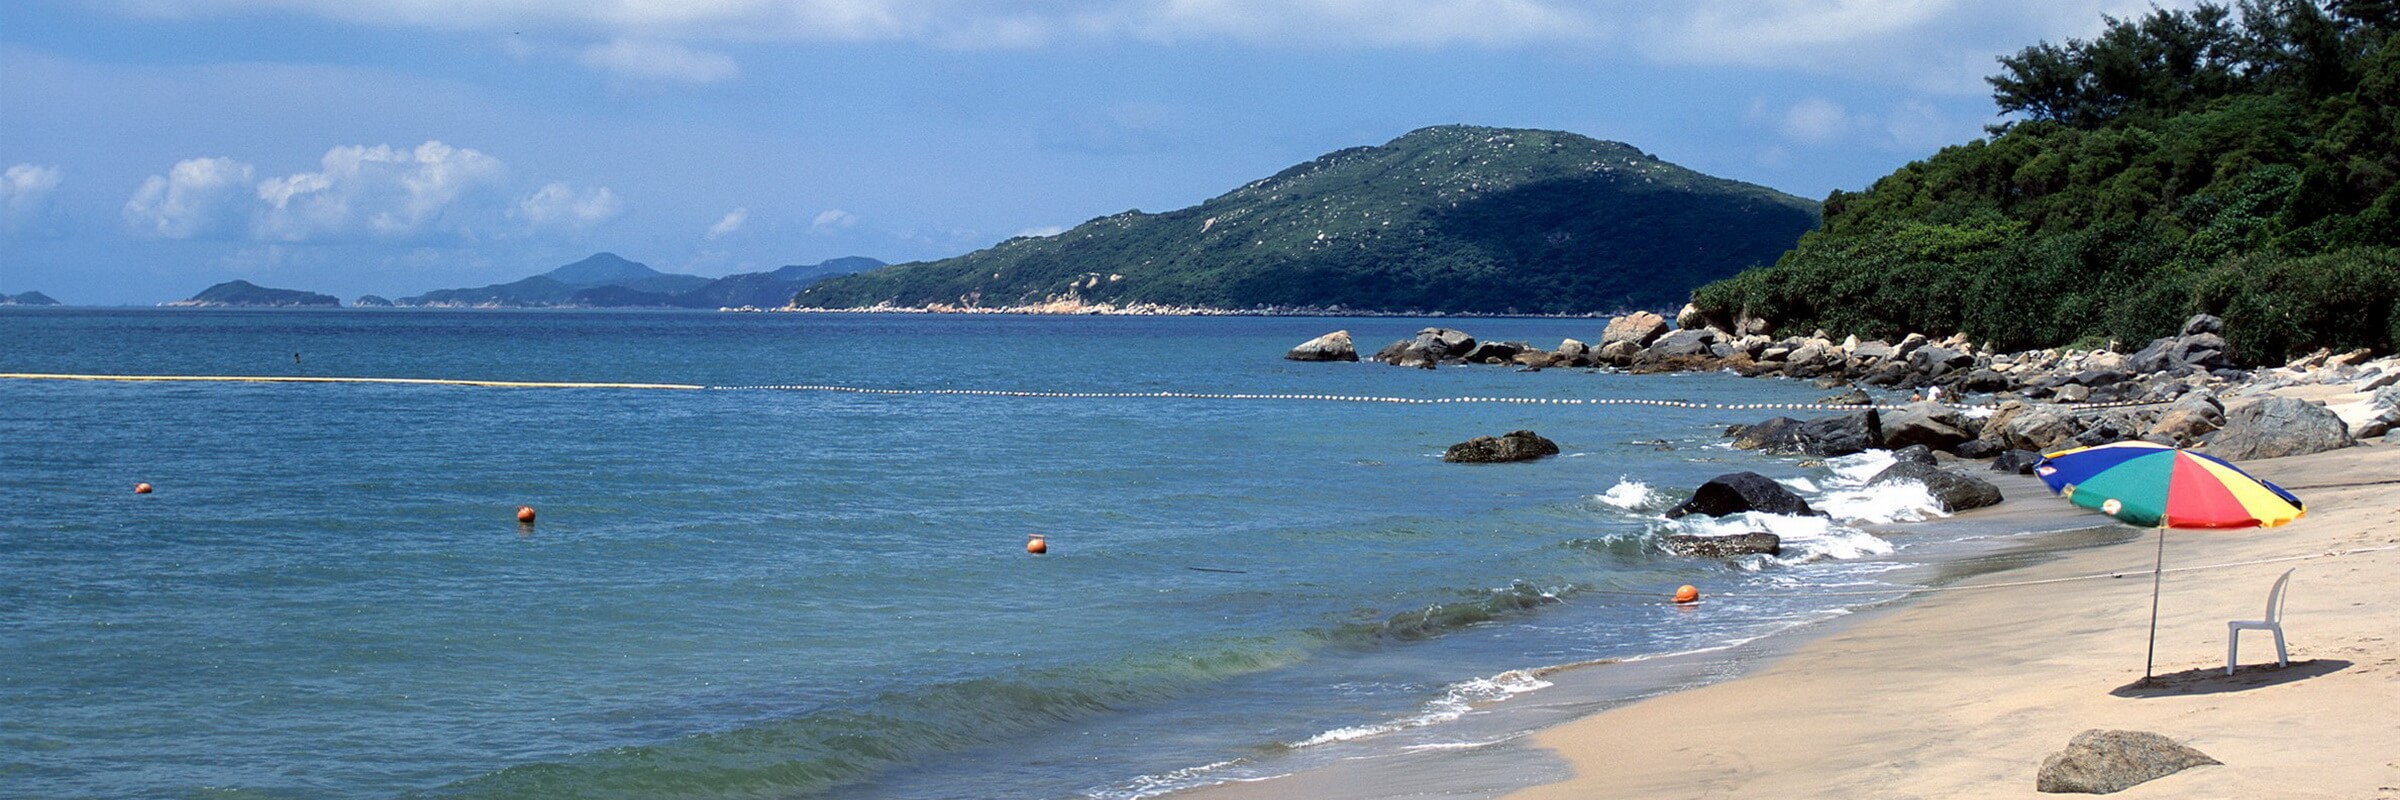 Lantau Island hat über 100.000 Einwohner und ist Hong Kongs größte insel